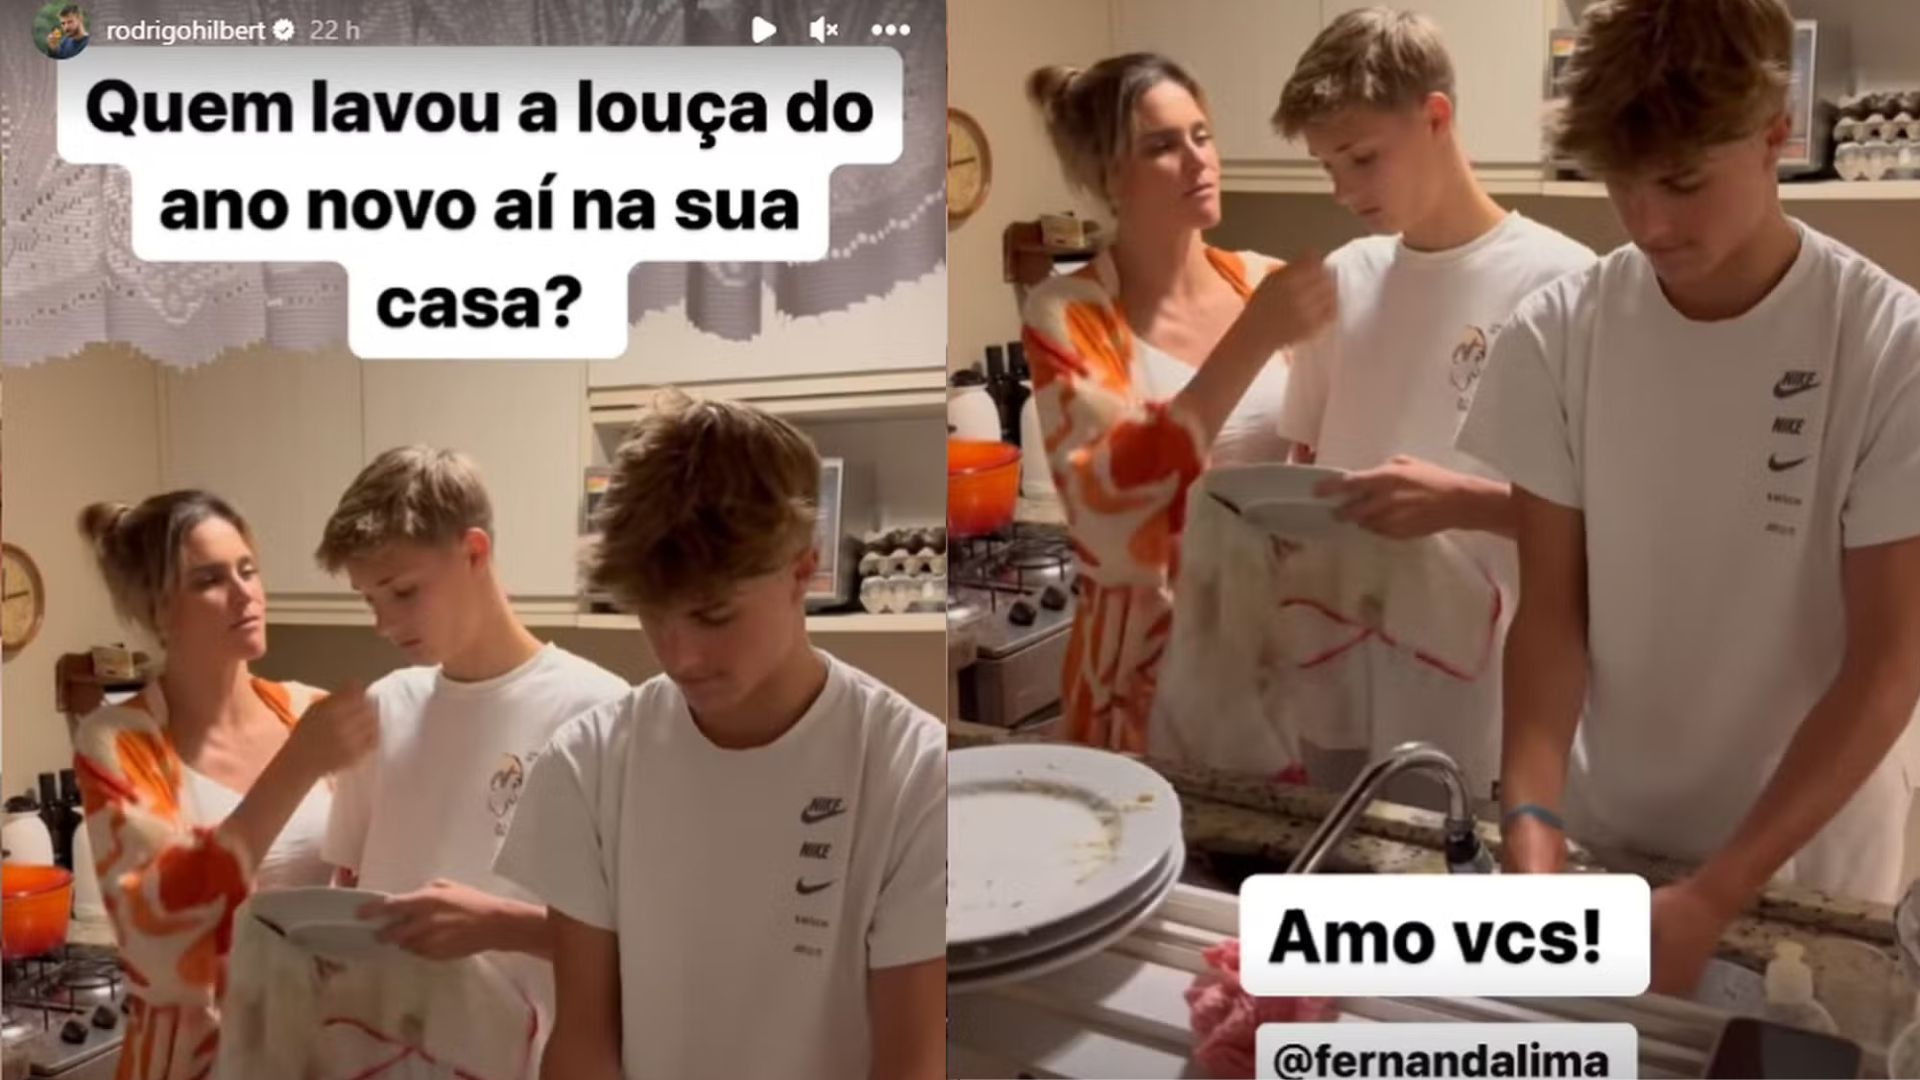 Storie de Rodrigo Hilbert mostrando os filhos gêmeos João e Francisco lavando a louça ao lado da mãe Fernanda Lima